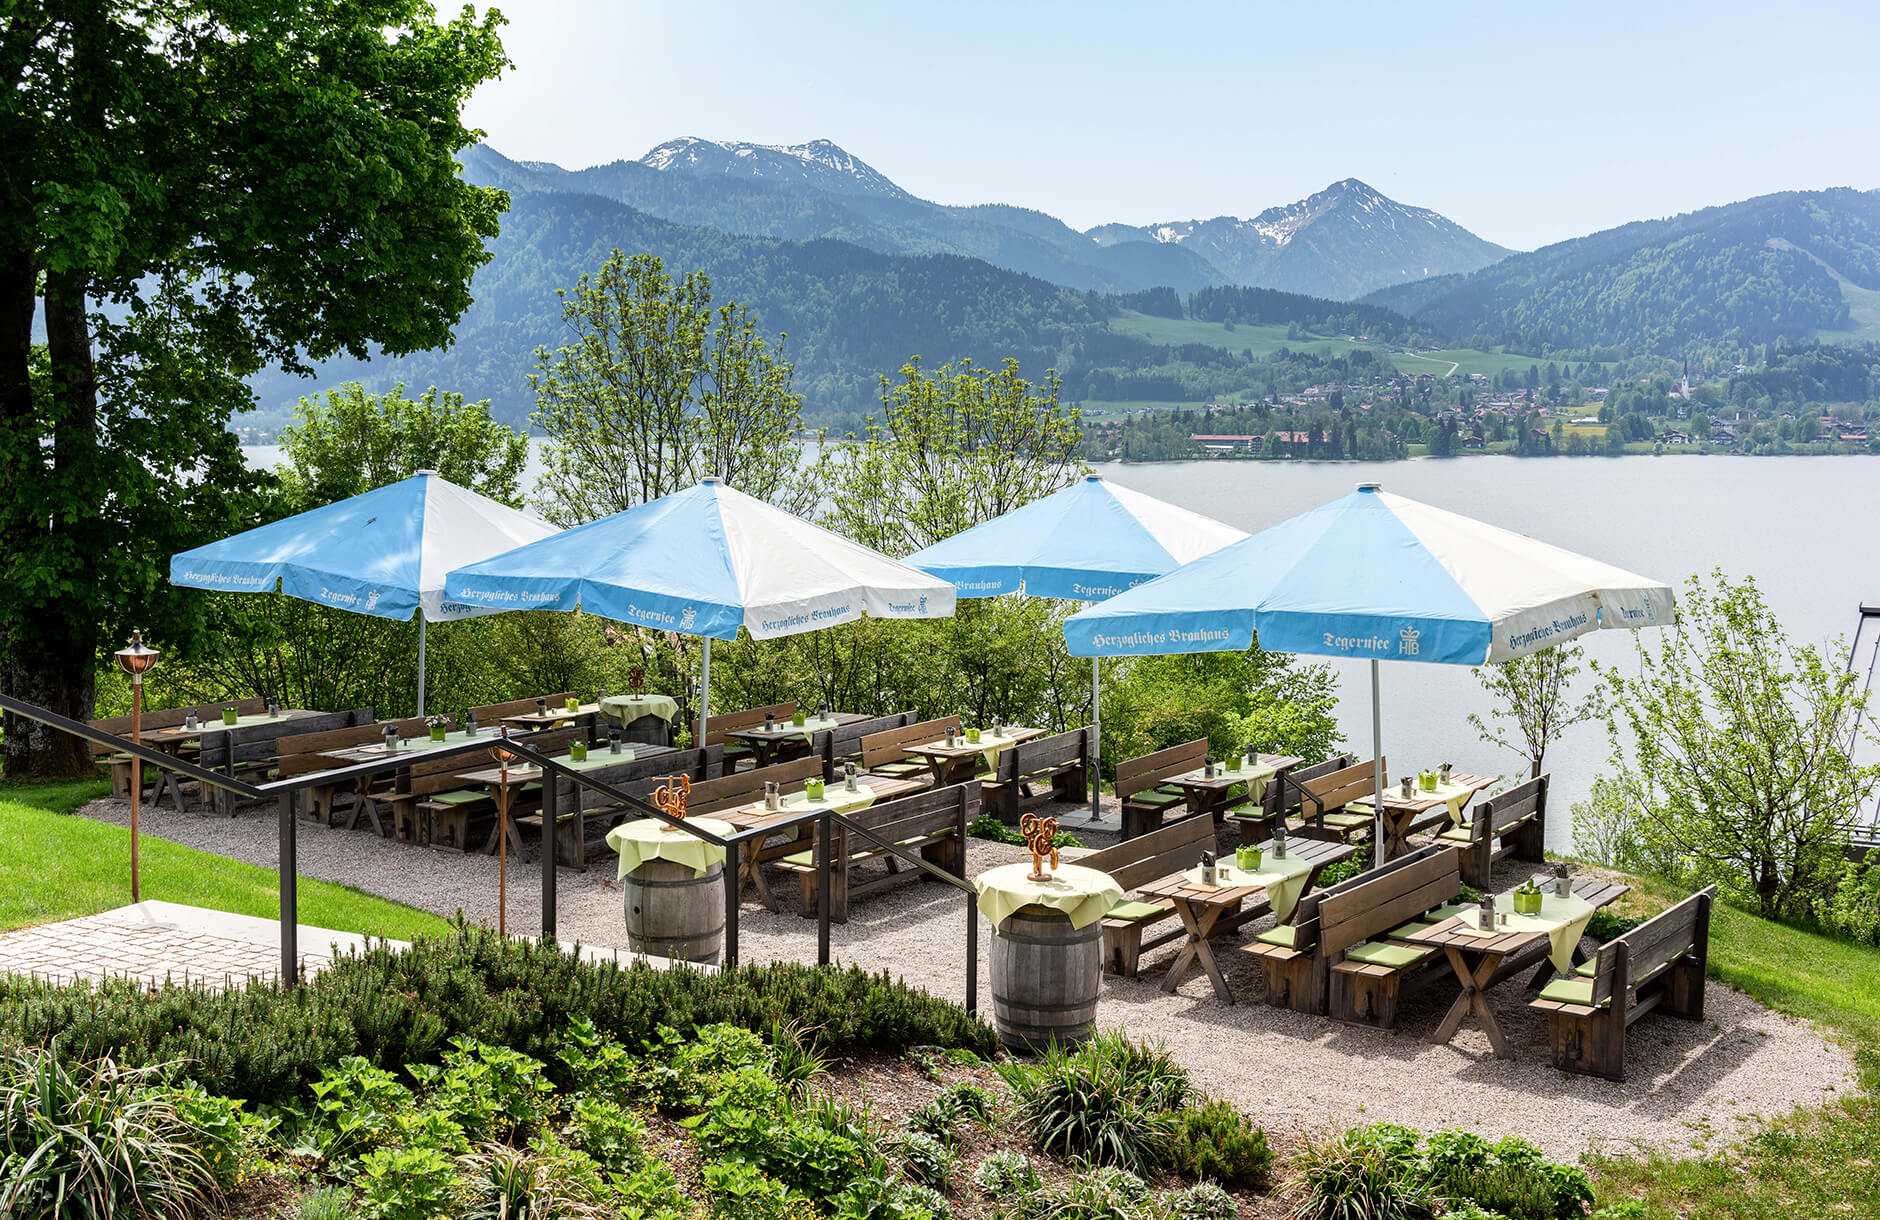 Blick auf den Biergarten auf der Terrasse mit Holzgarnituren und blau-weißen Schirmen, umgeben von Wiese und Bäumen mit Blick auf den Tegernsee und die Berge im Hintergrund.